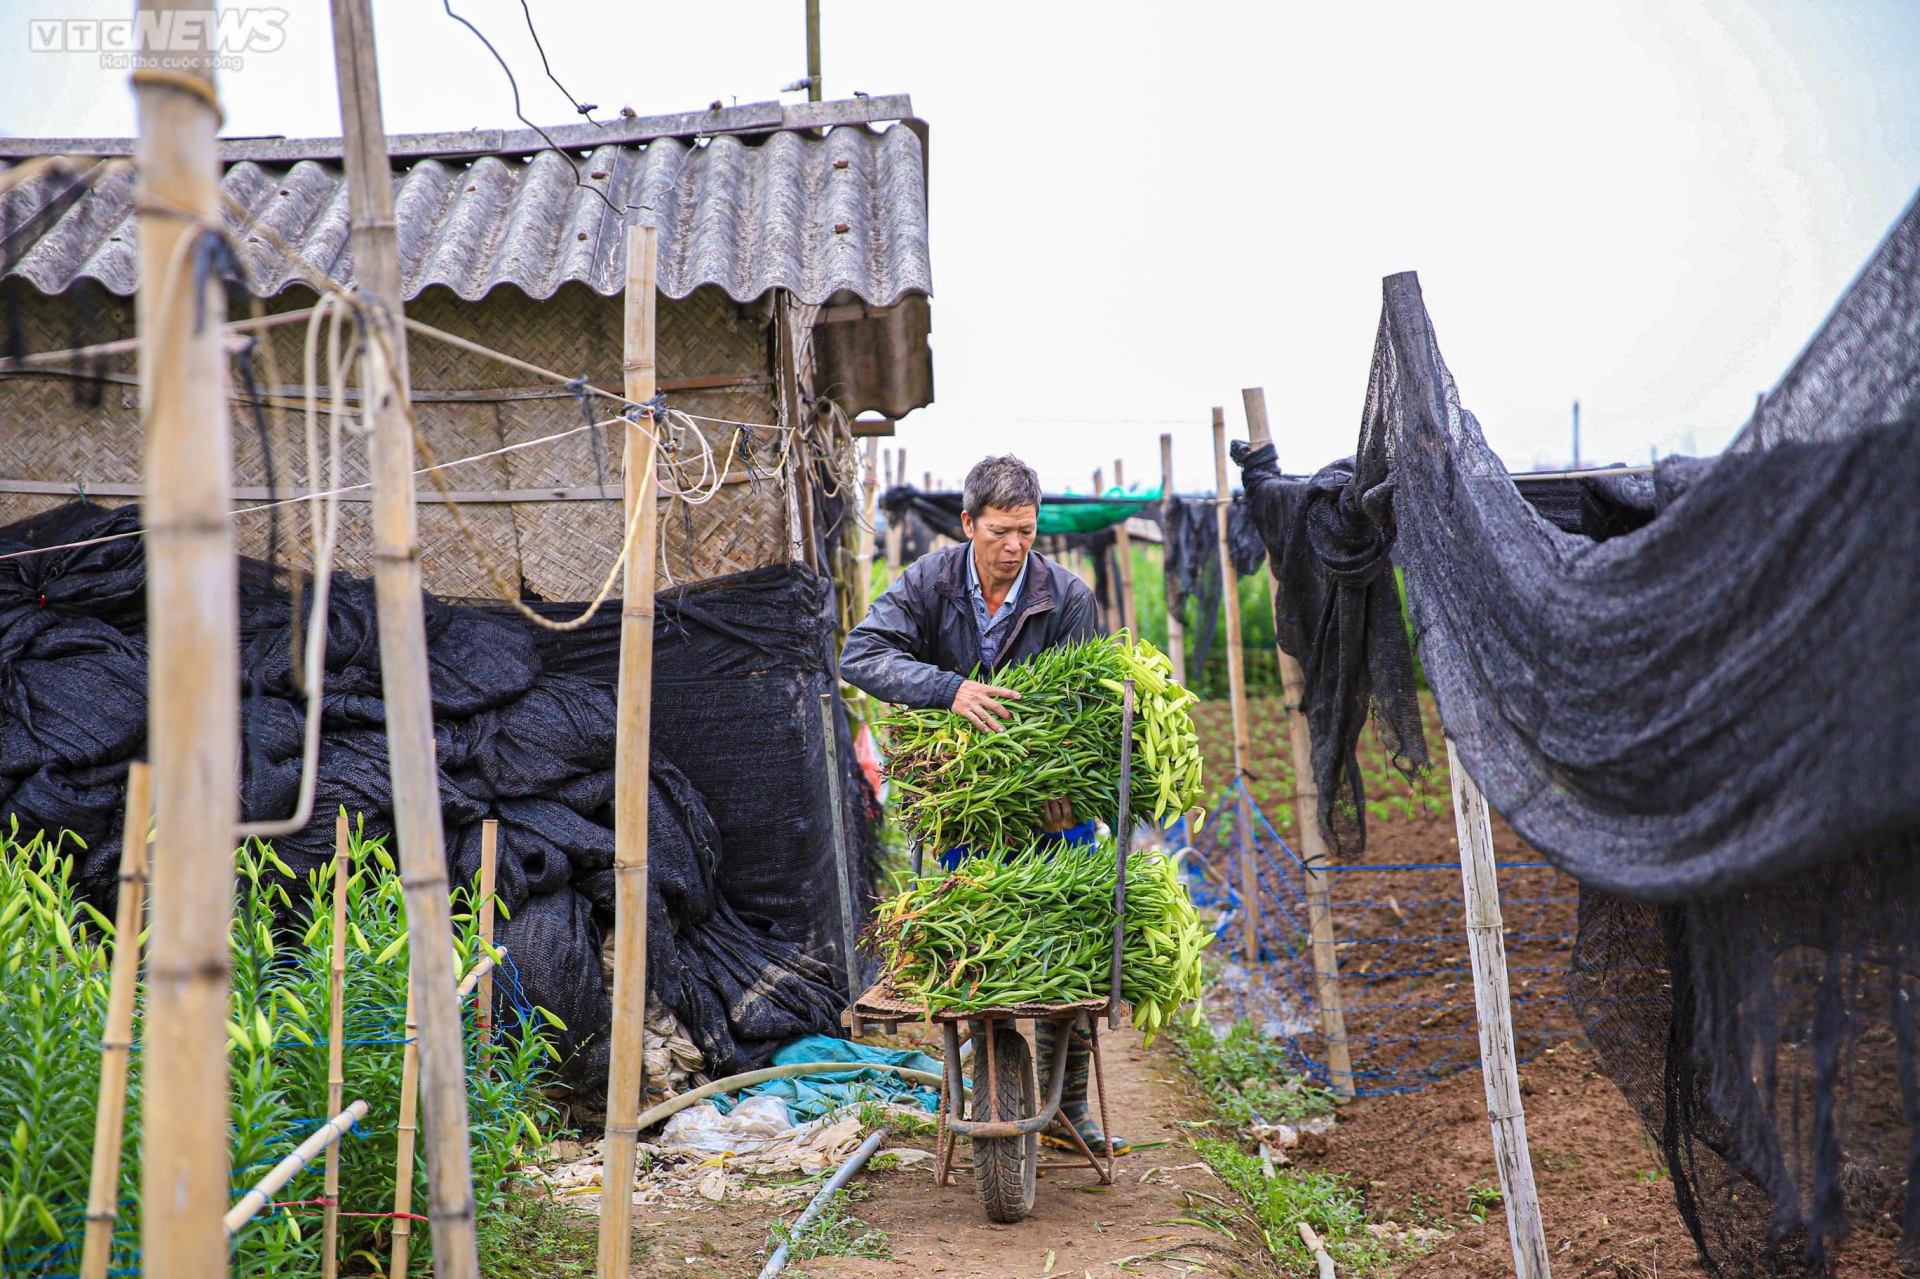 Hoa loa kèn vào vụ, nông dân ngoại thành Hà Nội thu chục triệu đồng mỗi ngày - 10